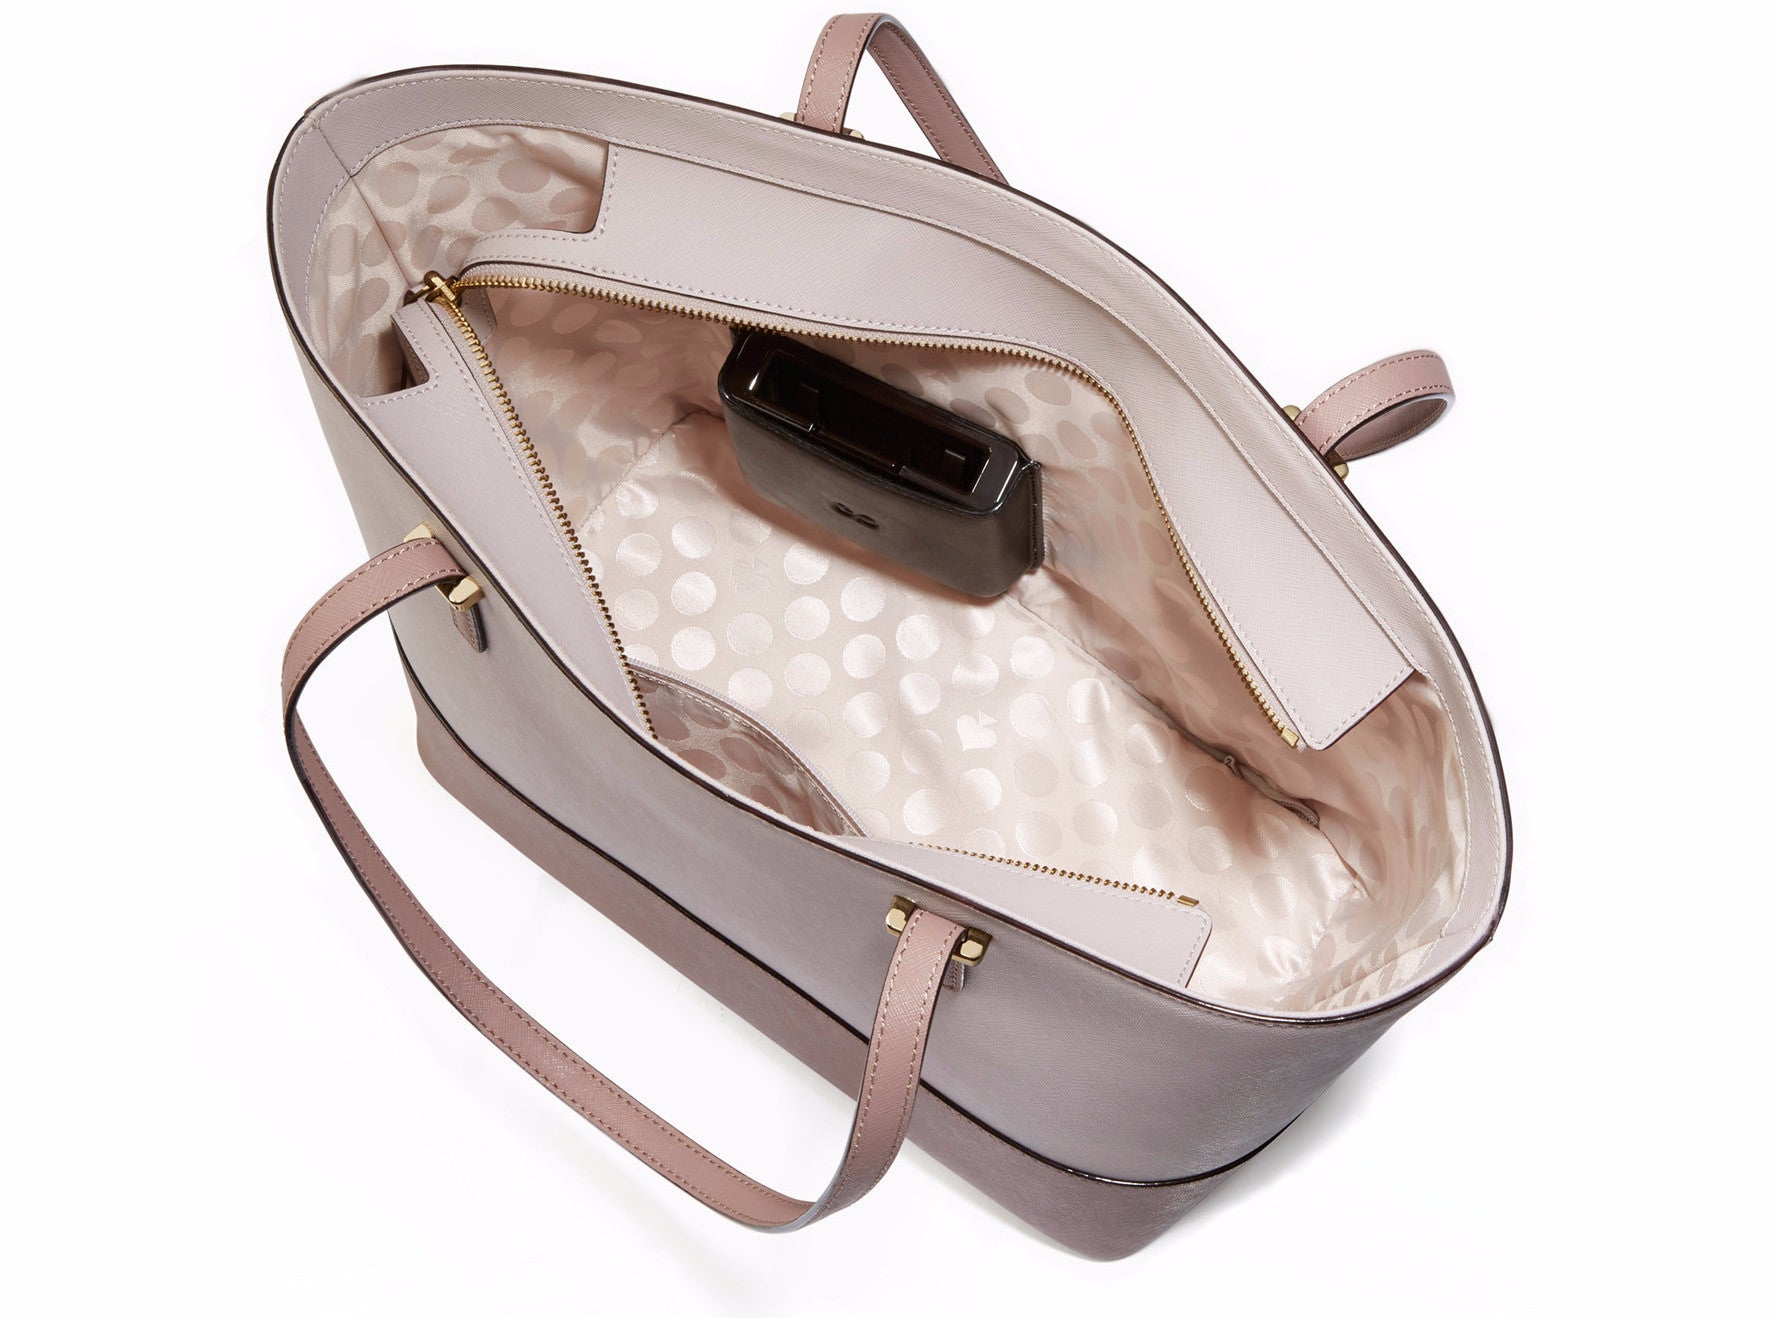 What's inside your Longchamp bags? Show us please | PurseForum